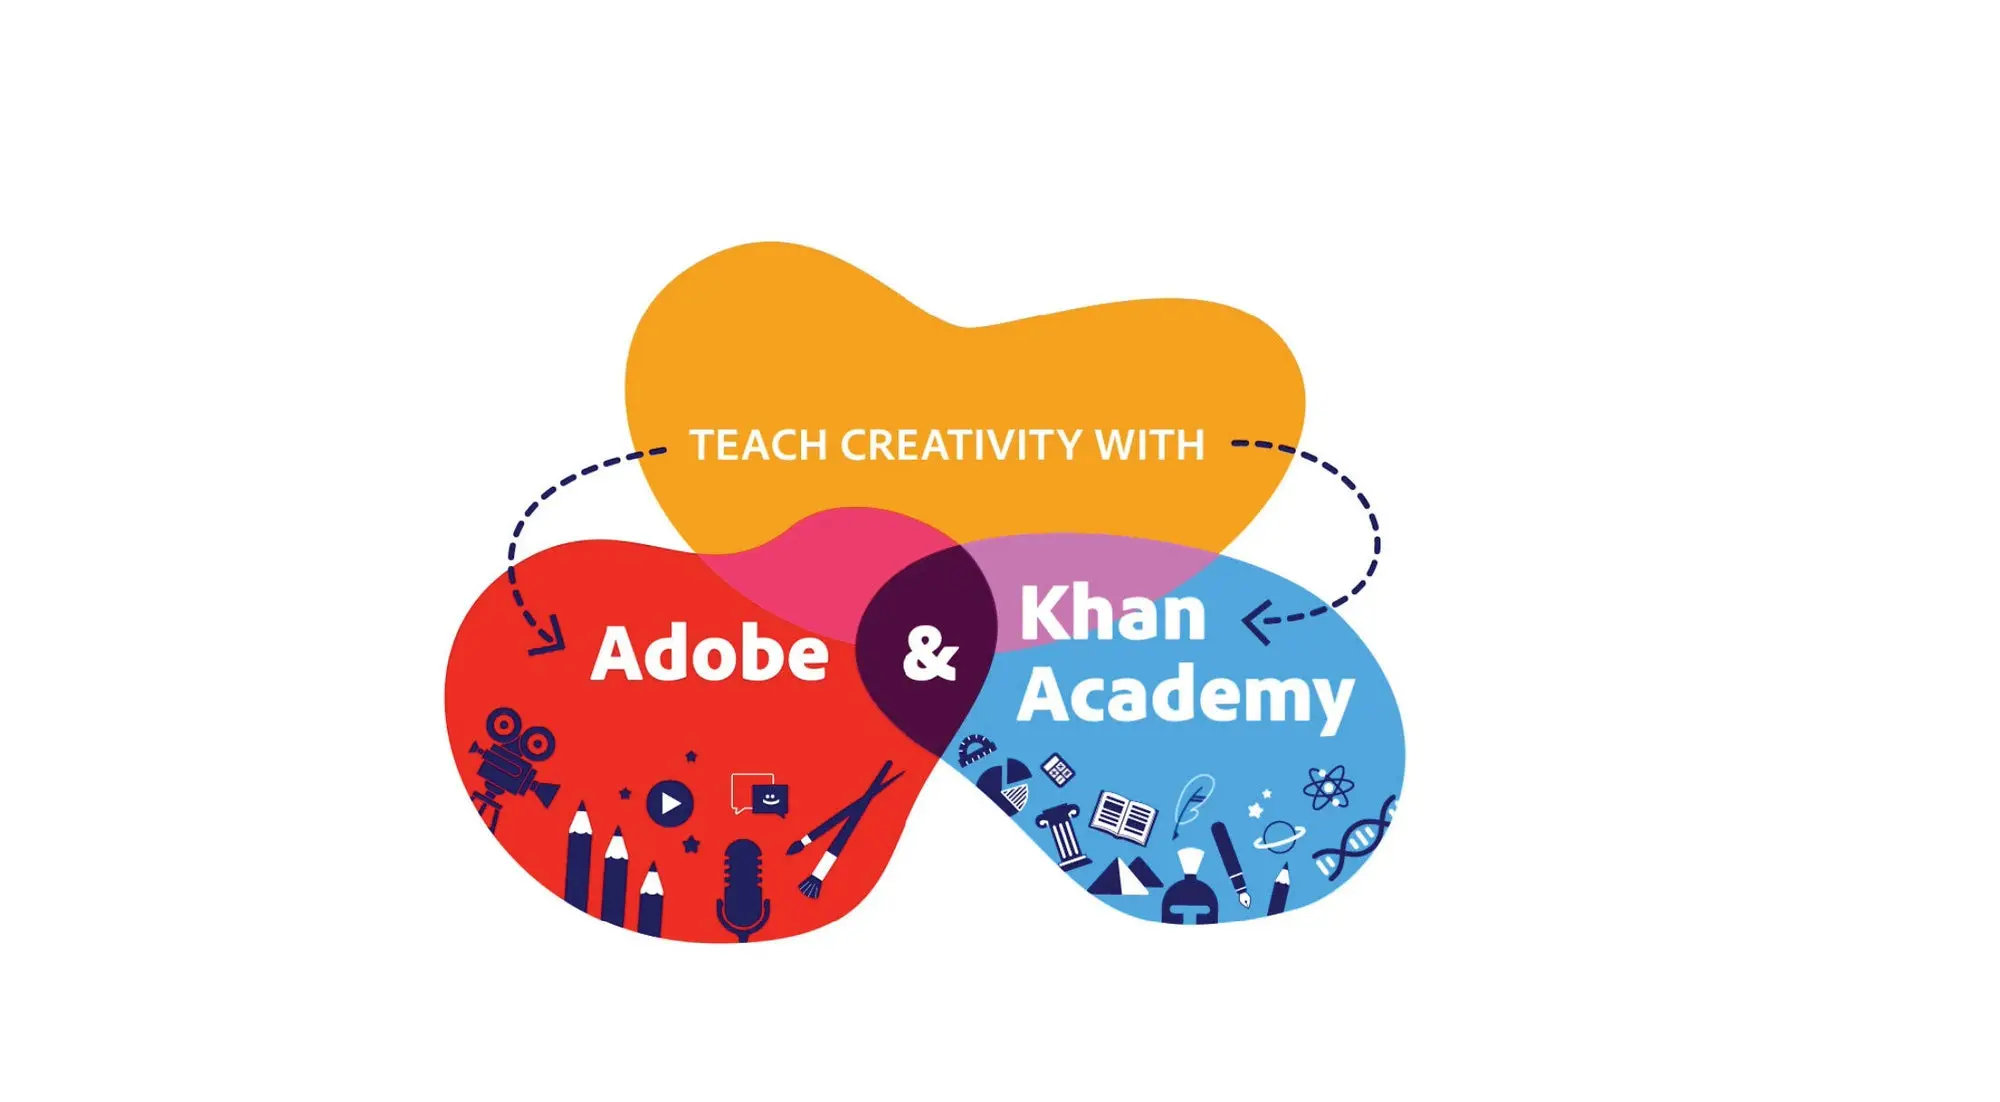 Abstract art with the words Teach Creativity with Adobe & Khan Academy. 